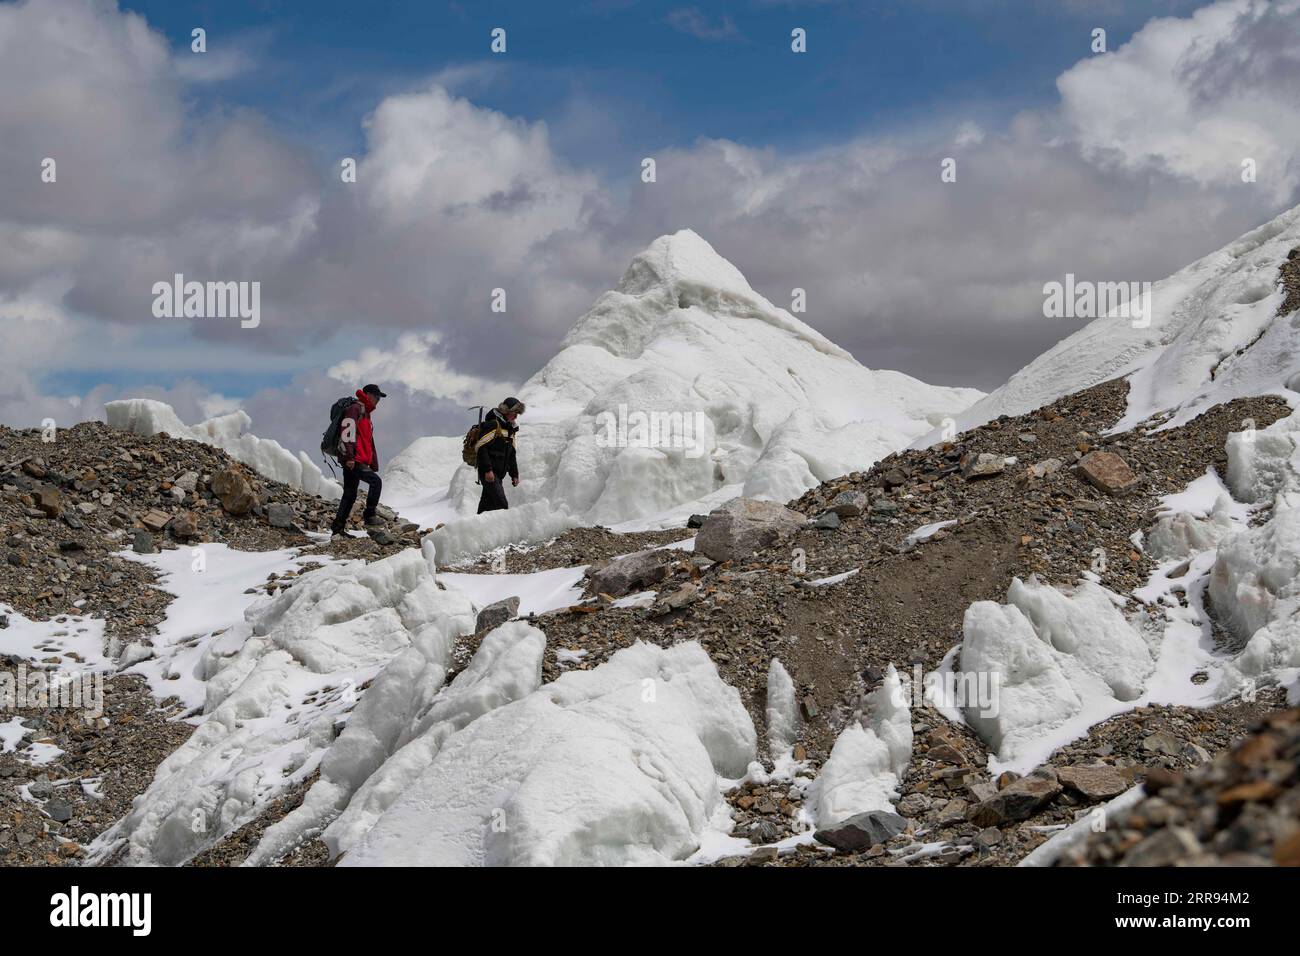 210528 -- URUMQI, 28 maggio 2021 -- Bikmirza Turdil R cammina davanti a un ghiacciaio mentre prende parte a un addestramento mirato sulla Muztagh Ata nella regione autonoma di Xinjiang Uygur della Cina nord-occidentale, 16 maggio 2021. Bikmirza, un allevatore di 24 anni, nacque e crebbe ai piedi del Muztagh Ata, un picco con un'altitudine di oltre 7.500 metri, nella regione autonoma di Uygur dello Xinjiang Pamir in Cina. Ha iniziato a lavorare come guida aiutando gli scalatori a trasportare attrezzature e provviste all'età di 18 anni. Scalare il Muztagh Ata, un simbolo di coraggio, è anche considerato come la cerimonia di raggiungimento della maggiore età per i locali Foto Stock